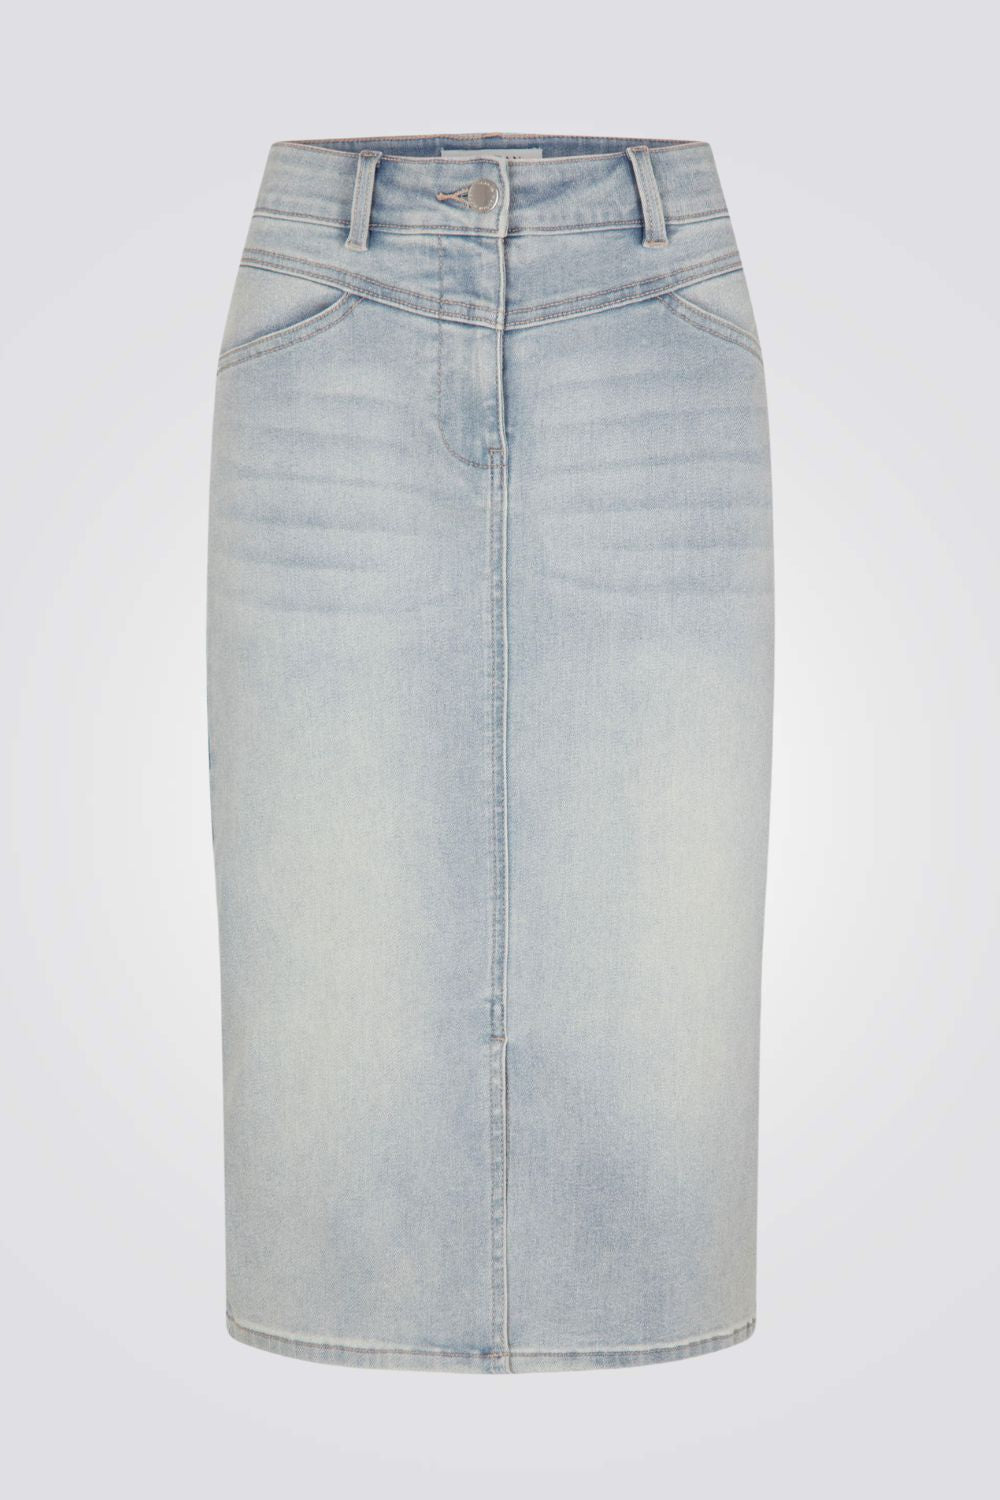 חצאית ג'ינס בצבע כחול בהיר